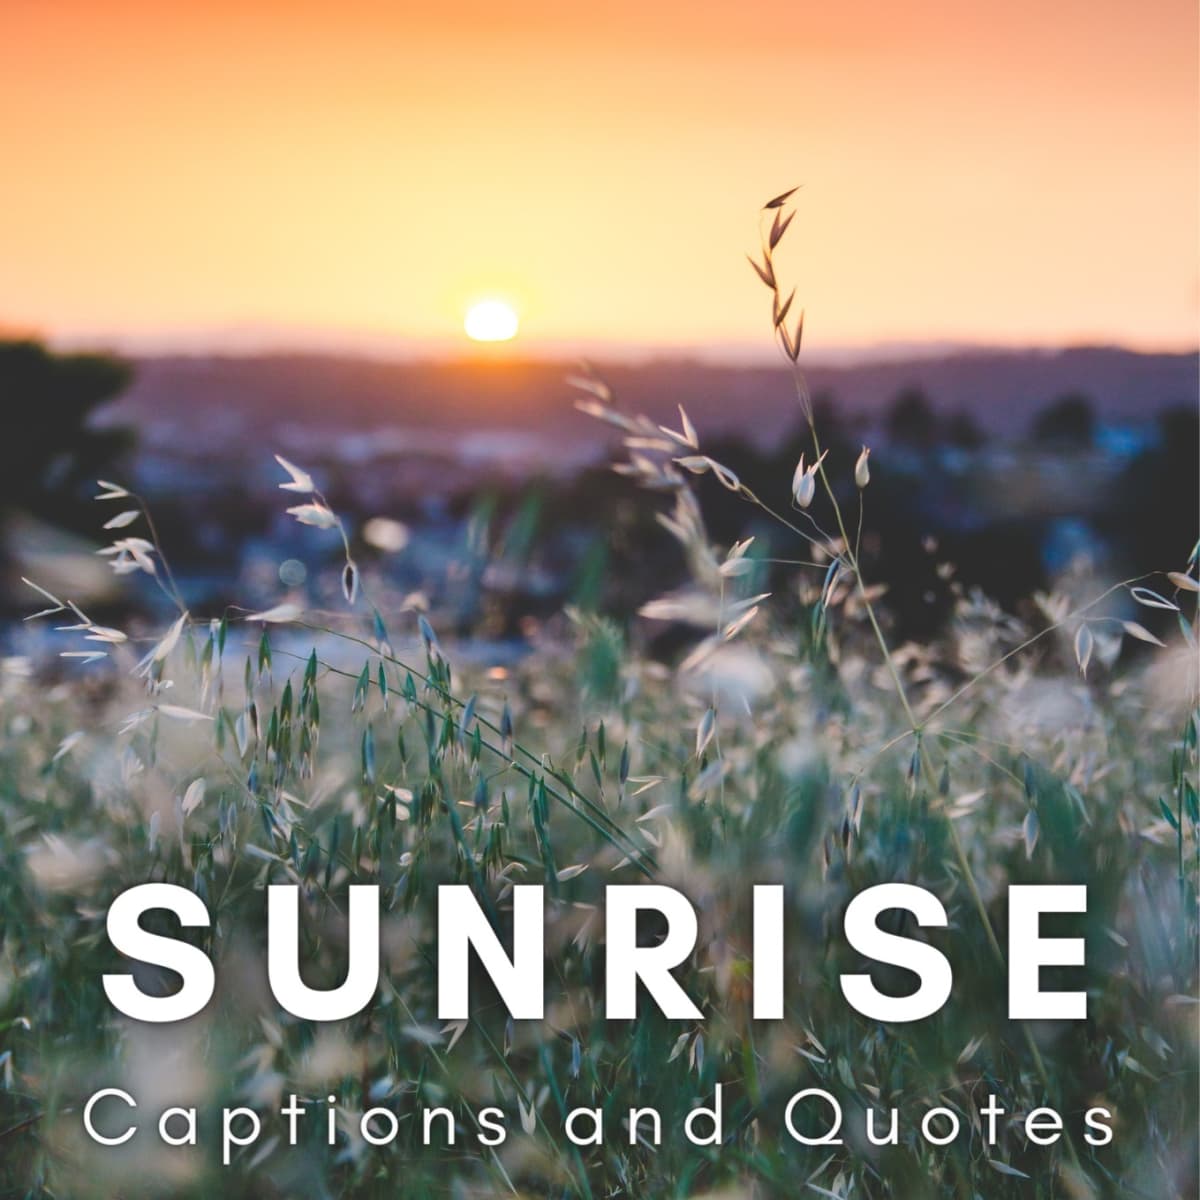 sunrise quotes life